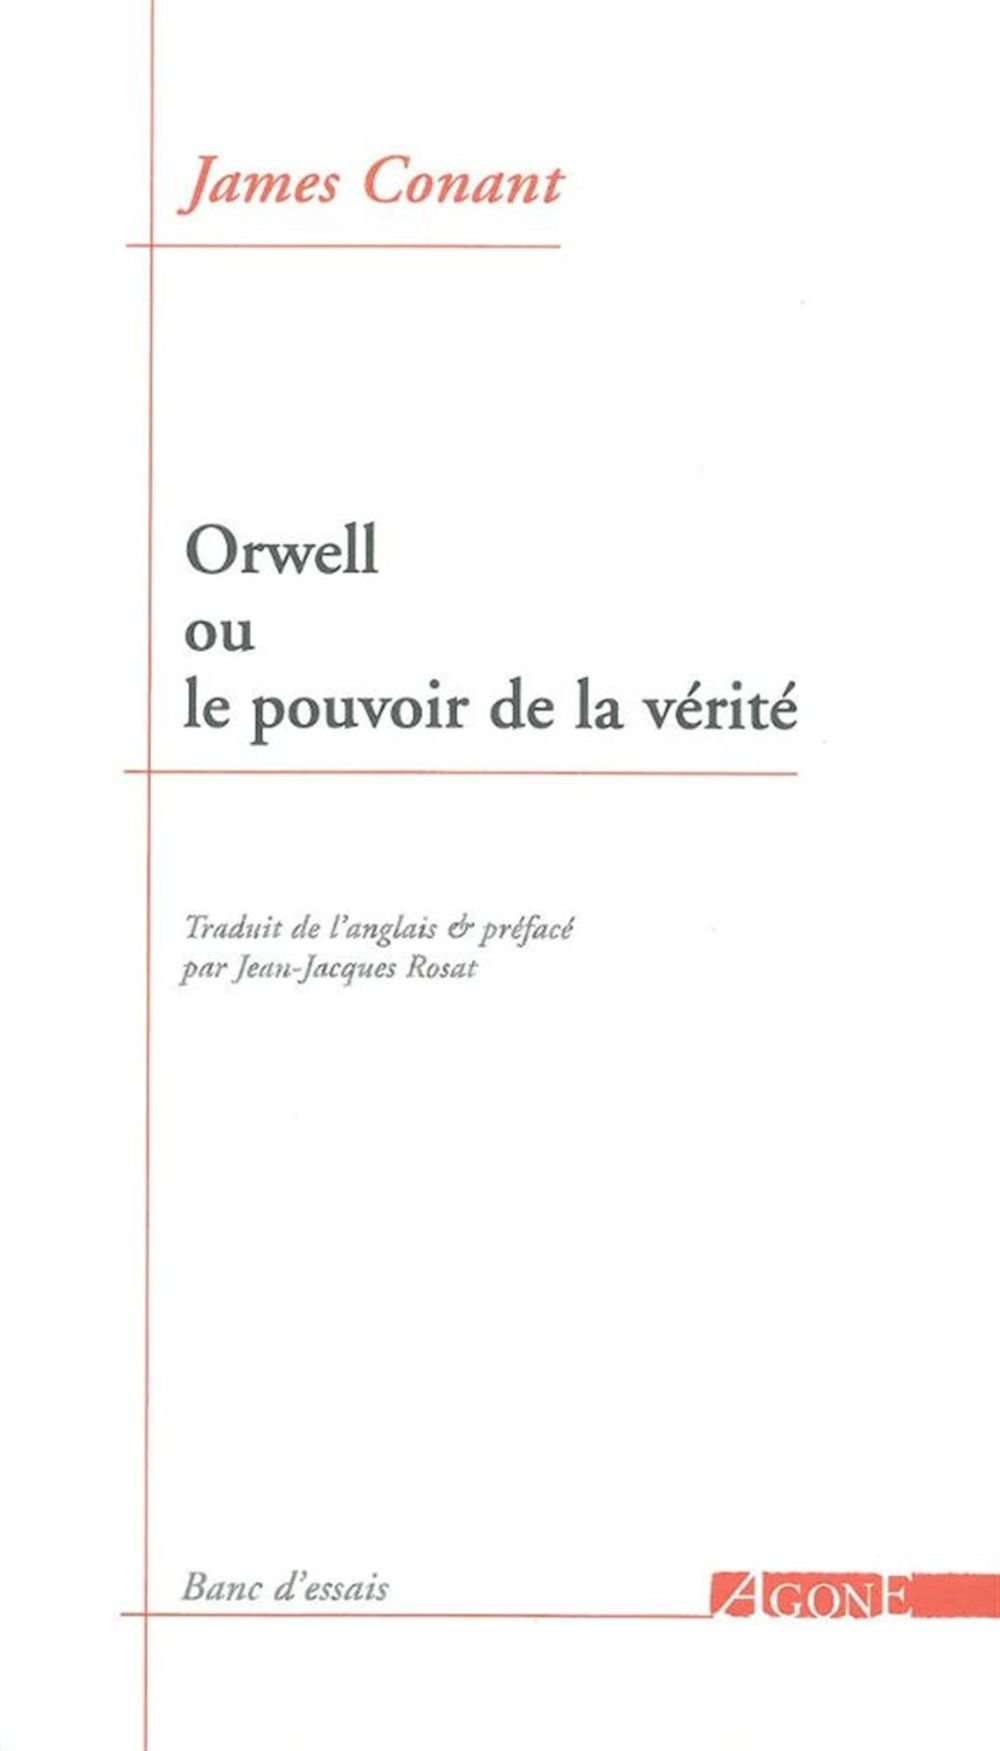 La réflexion d’Orwell sur le concept de vérité interroge la possibilité de la liberté.